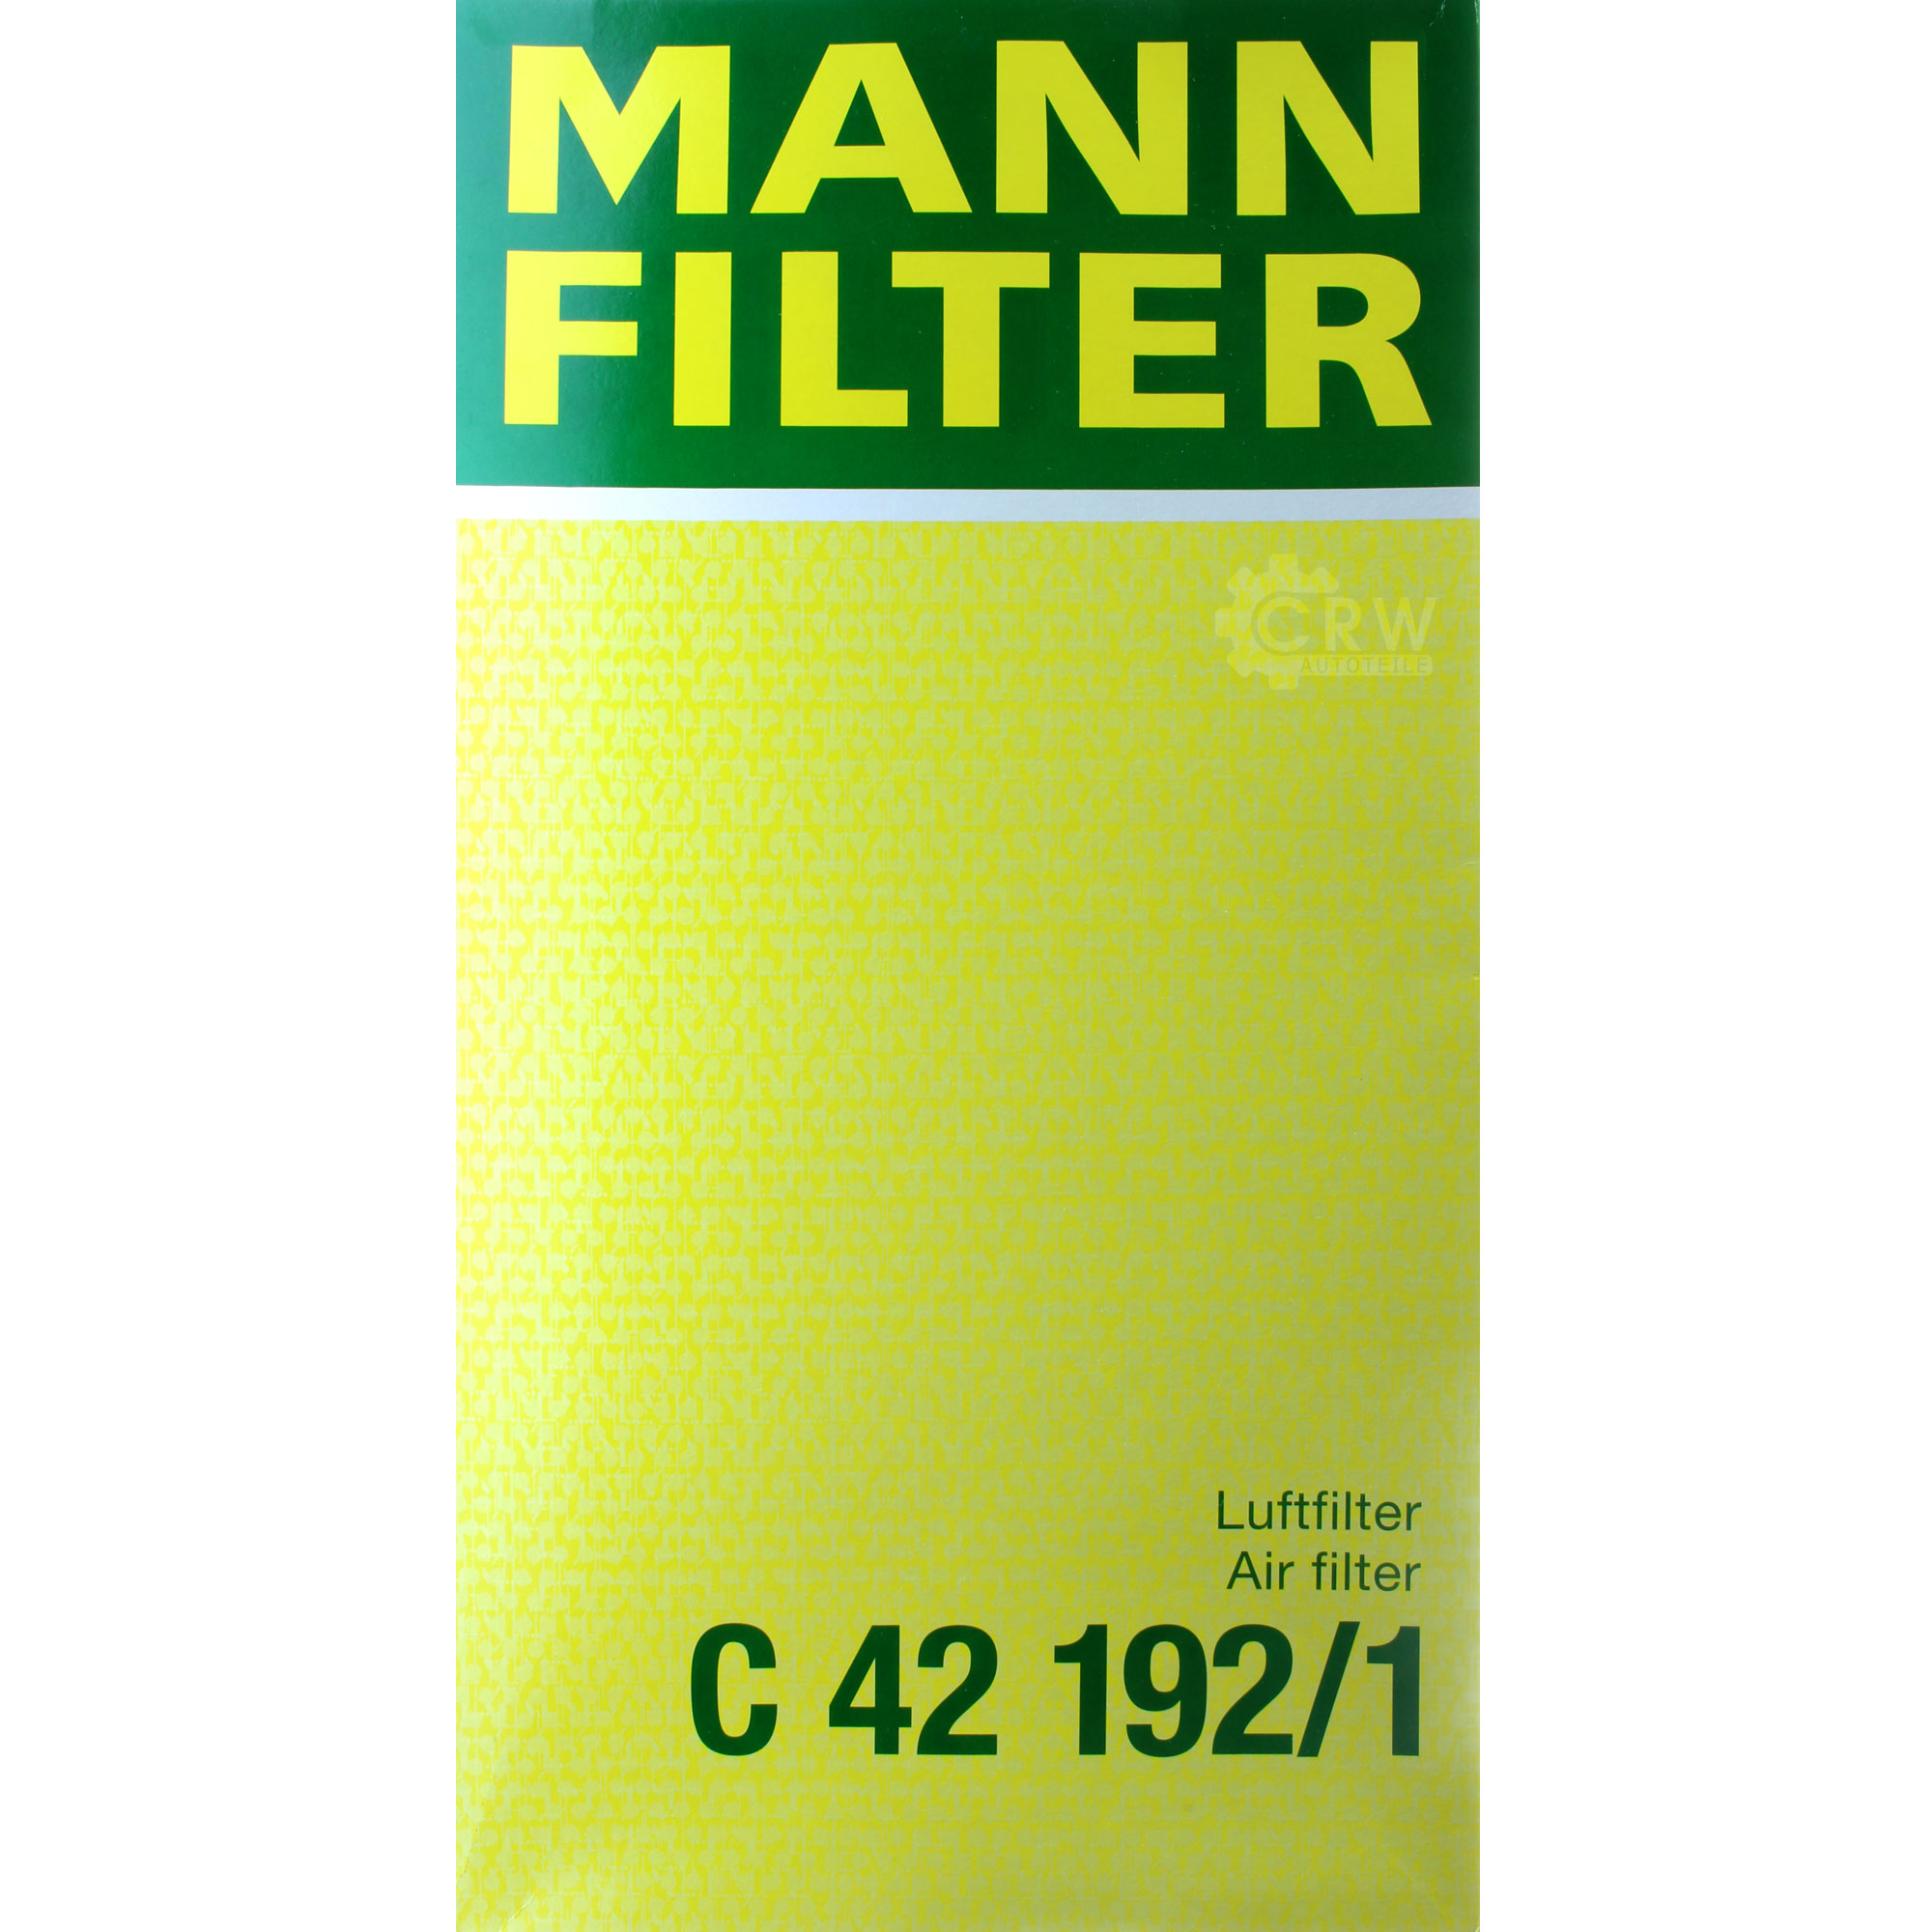 MANN-FILTER Luftfilter für Mercedes-Benz Vito/Mixto Kasten W639 113 CDI 116